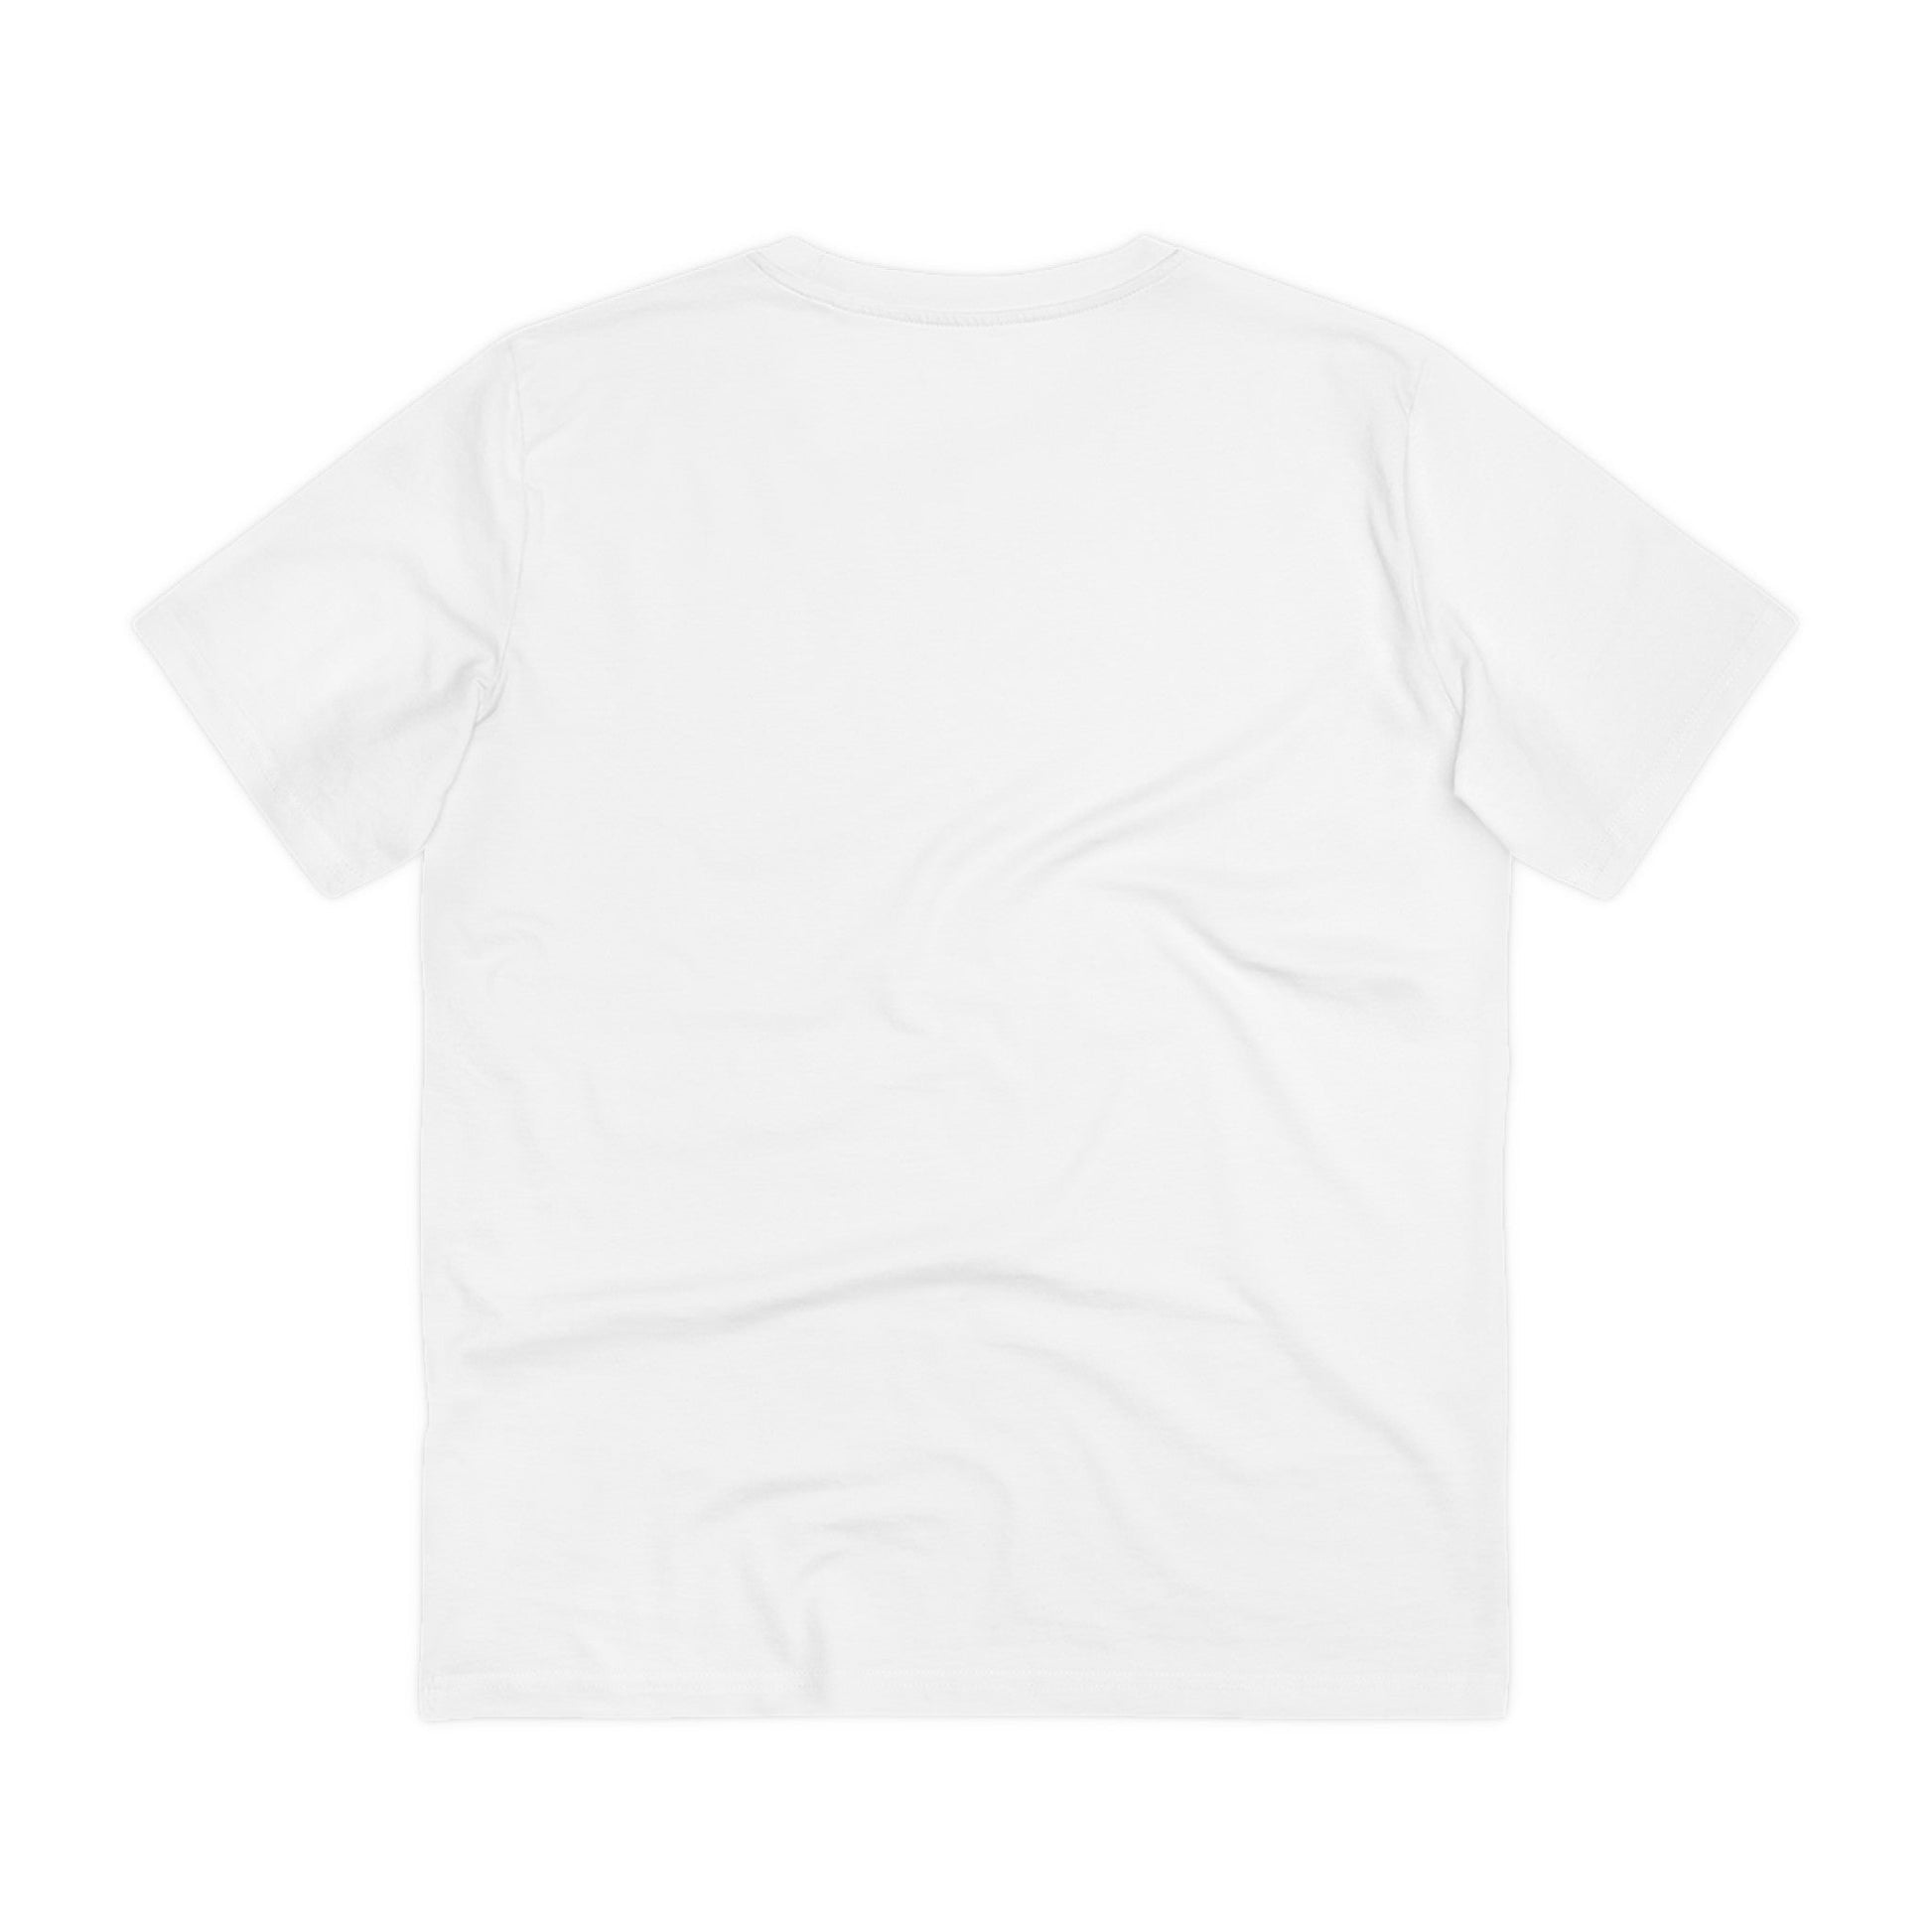 Printify T-Shirt Punk Hell - Streetwear - King Breaker - Front Design